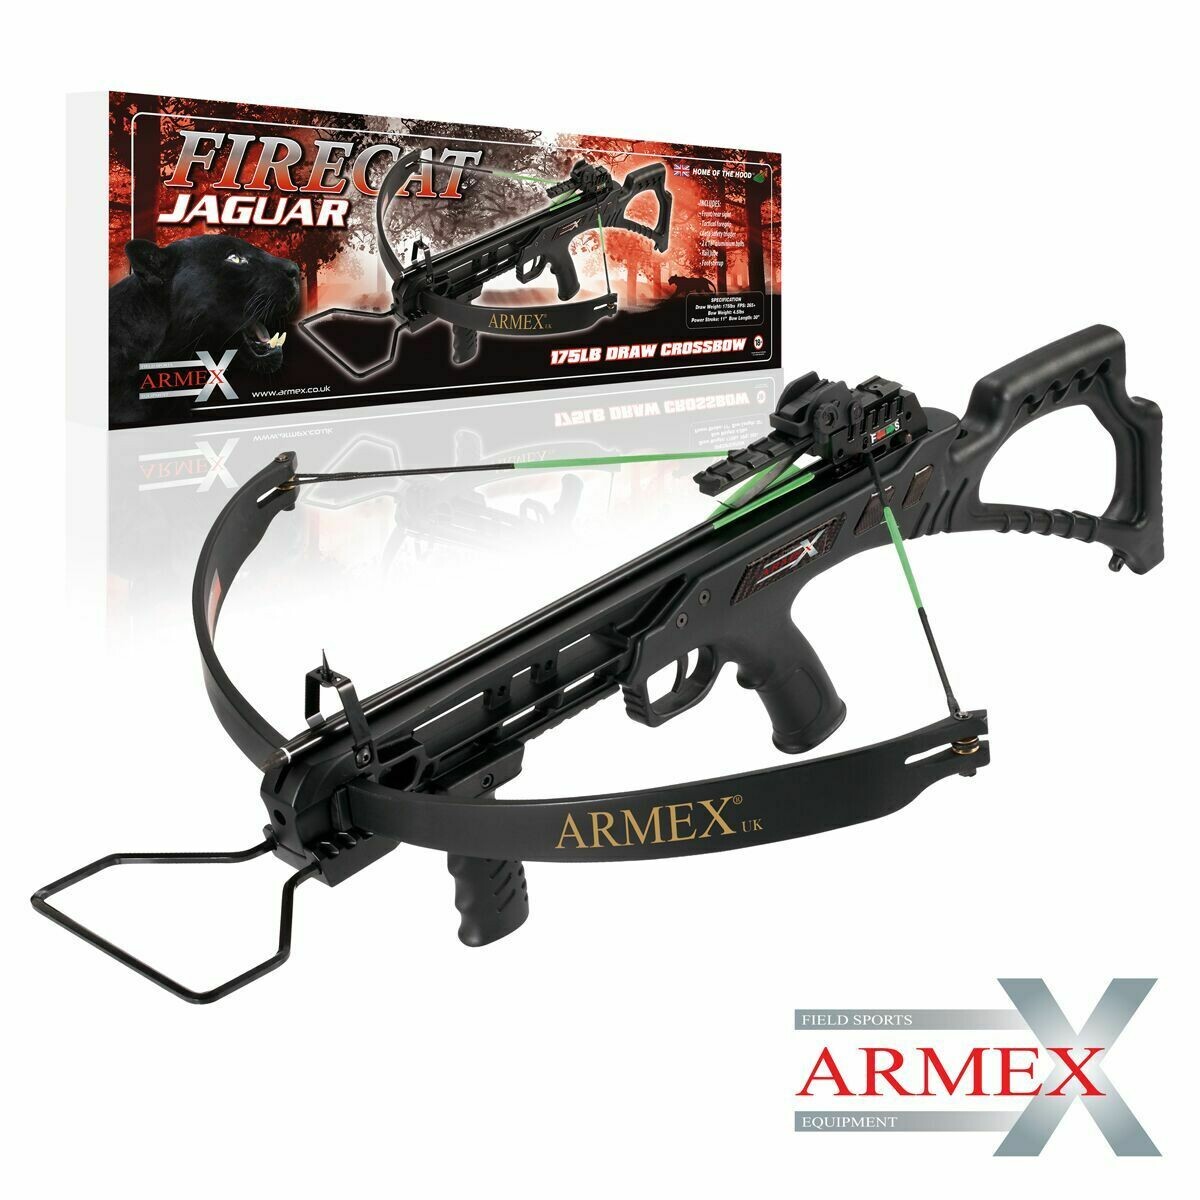 Armex Firecat Jaguar 175LB Tactical Hybrid Crossbow - Black